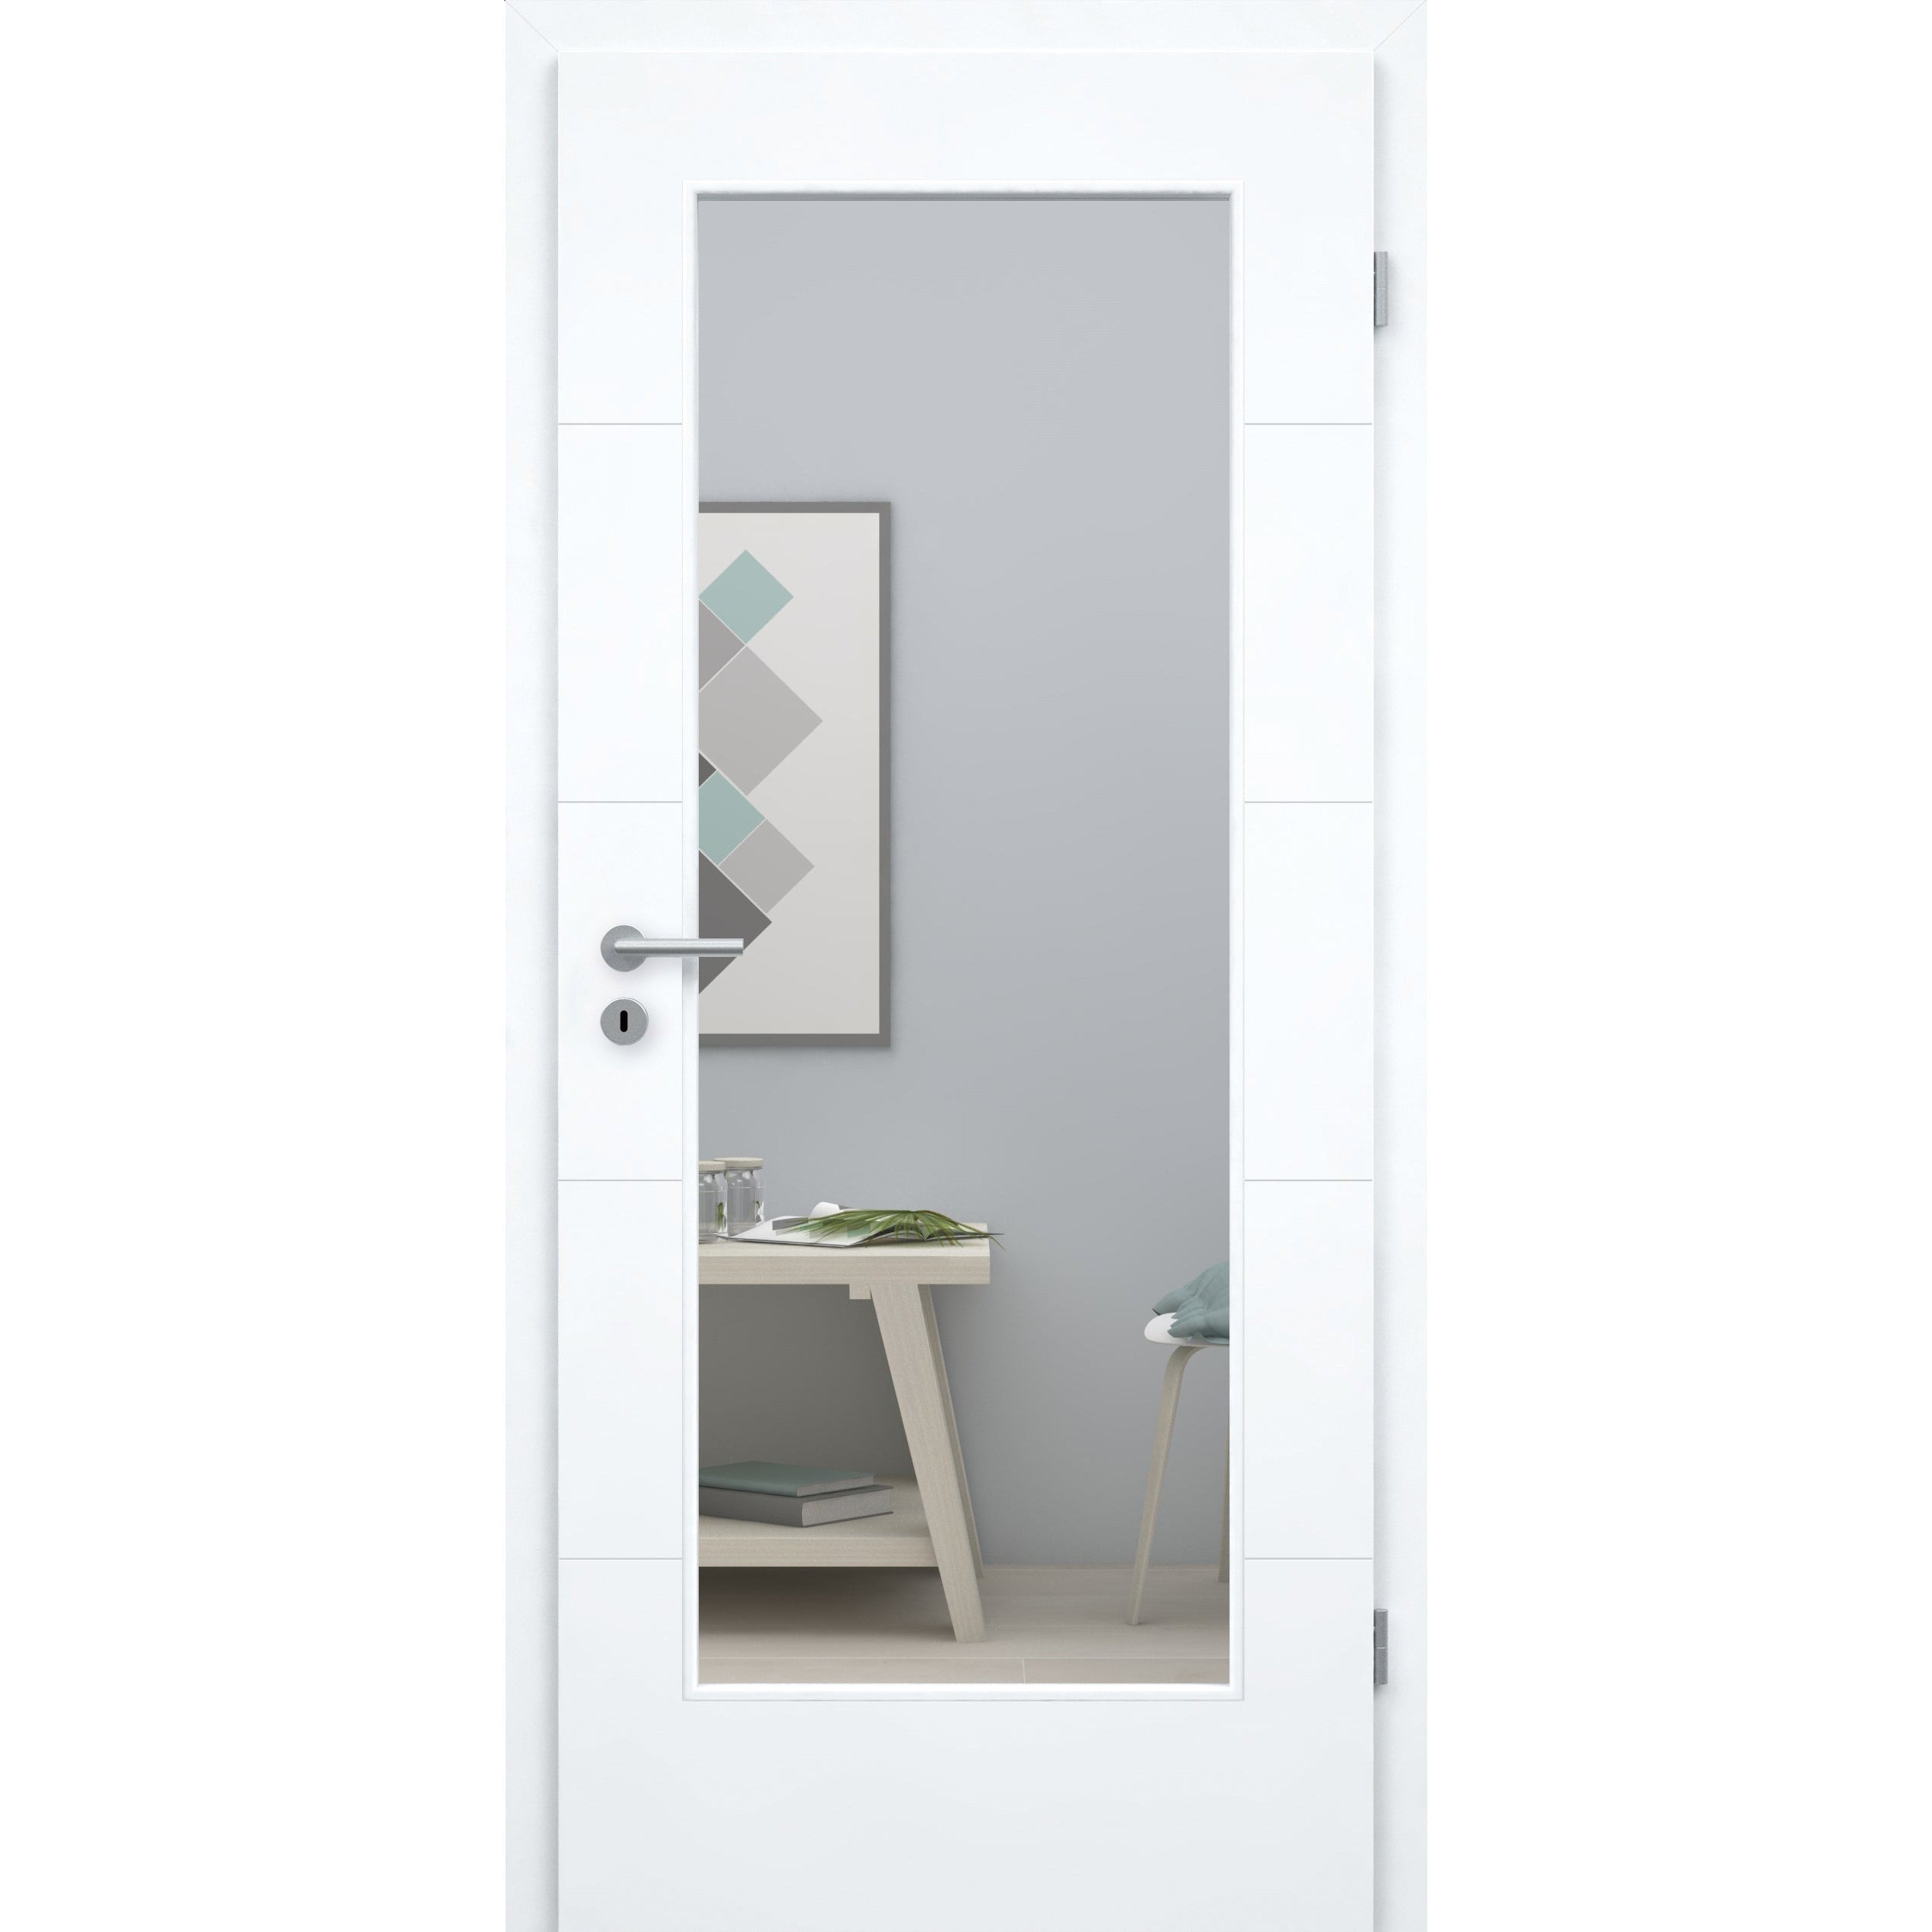 Zimmertür brillant-weiß modern mit 4 Rillen und Lichtausschnitt Designkante - Modell Designtür Q43LA